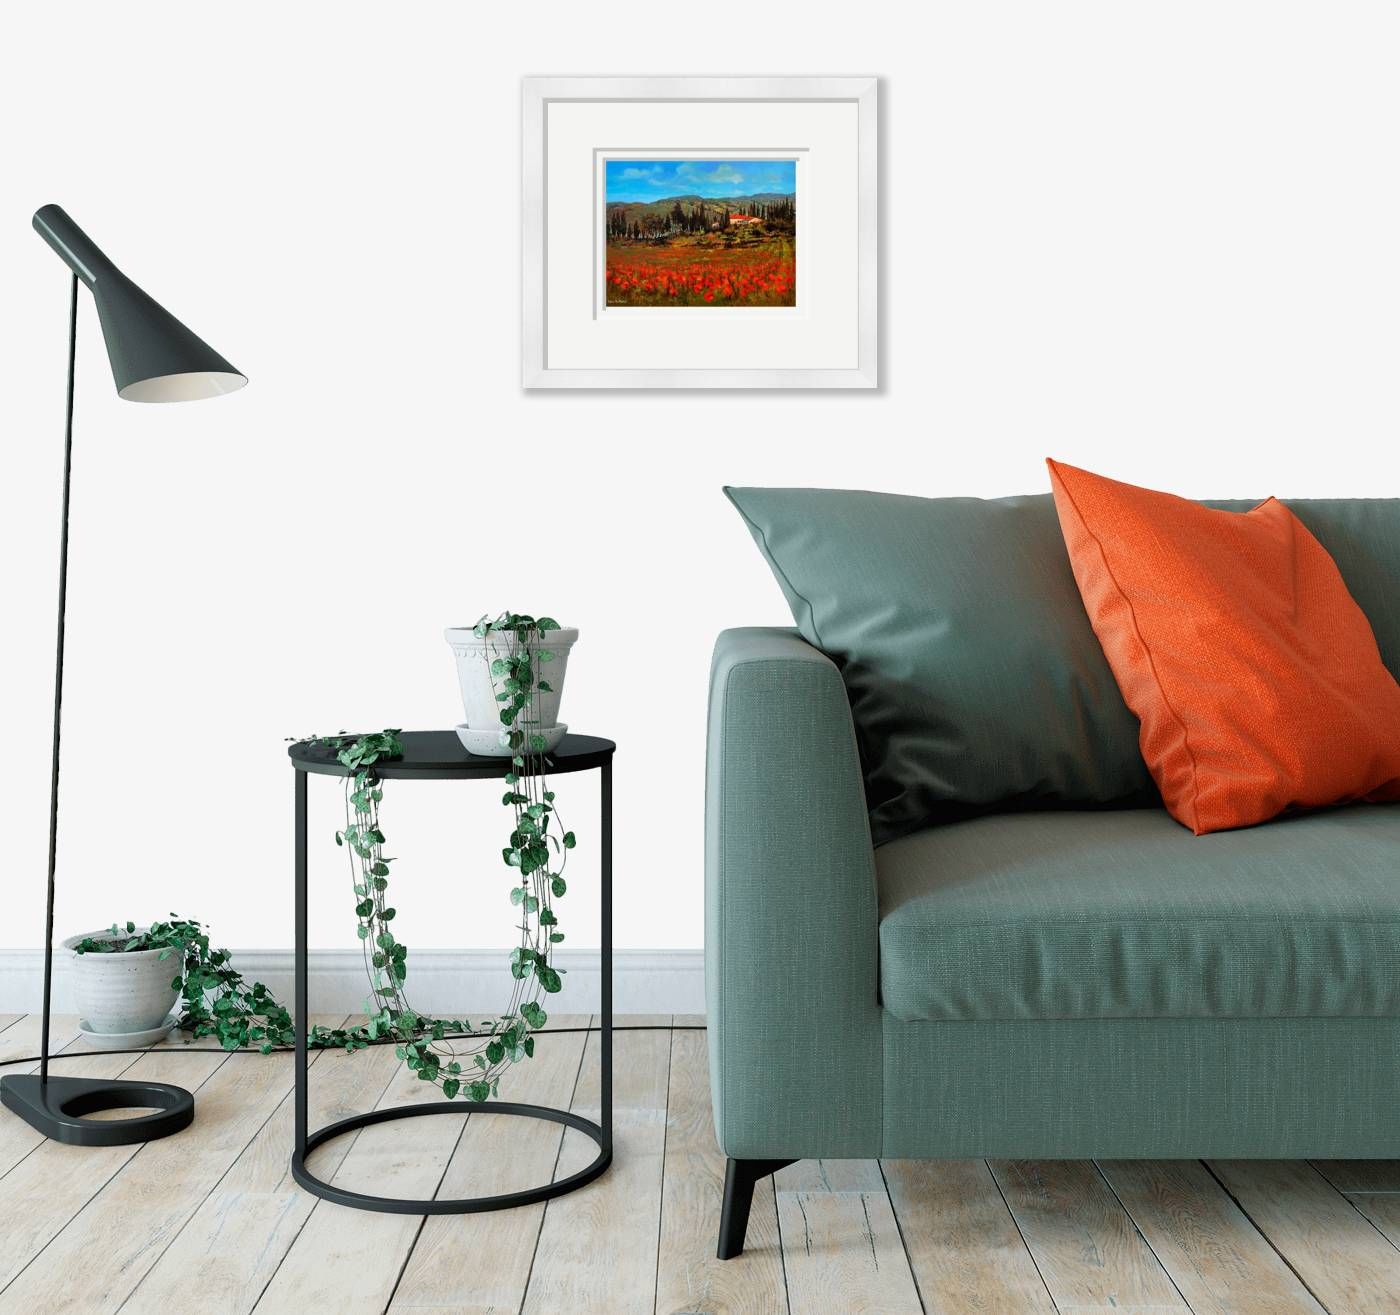 Medium framed - Poppies, Tuscany - 51 by Chris McMorrow